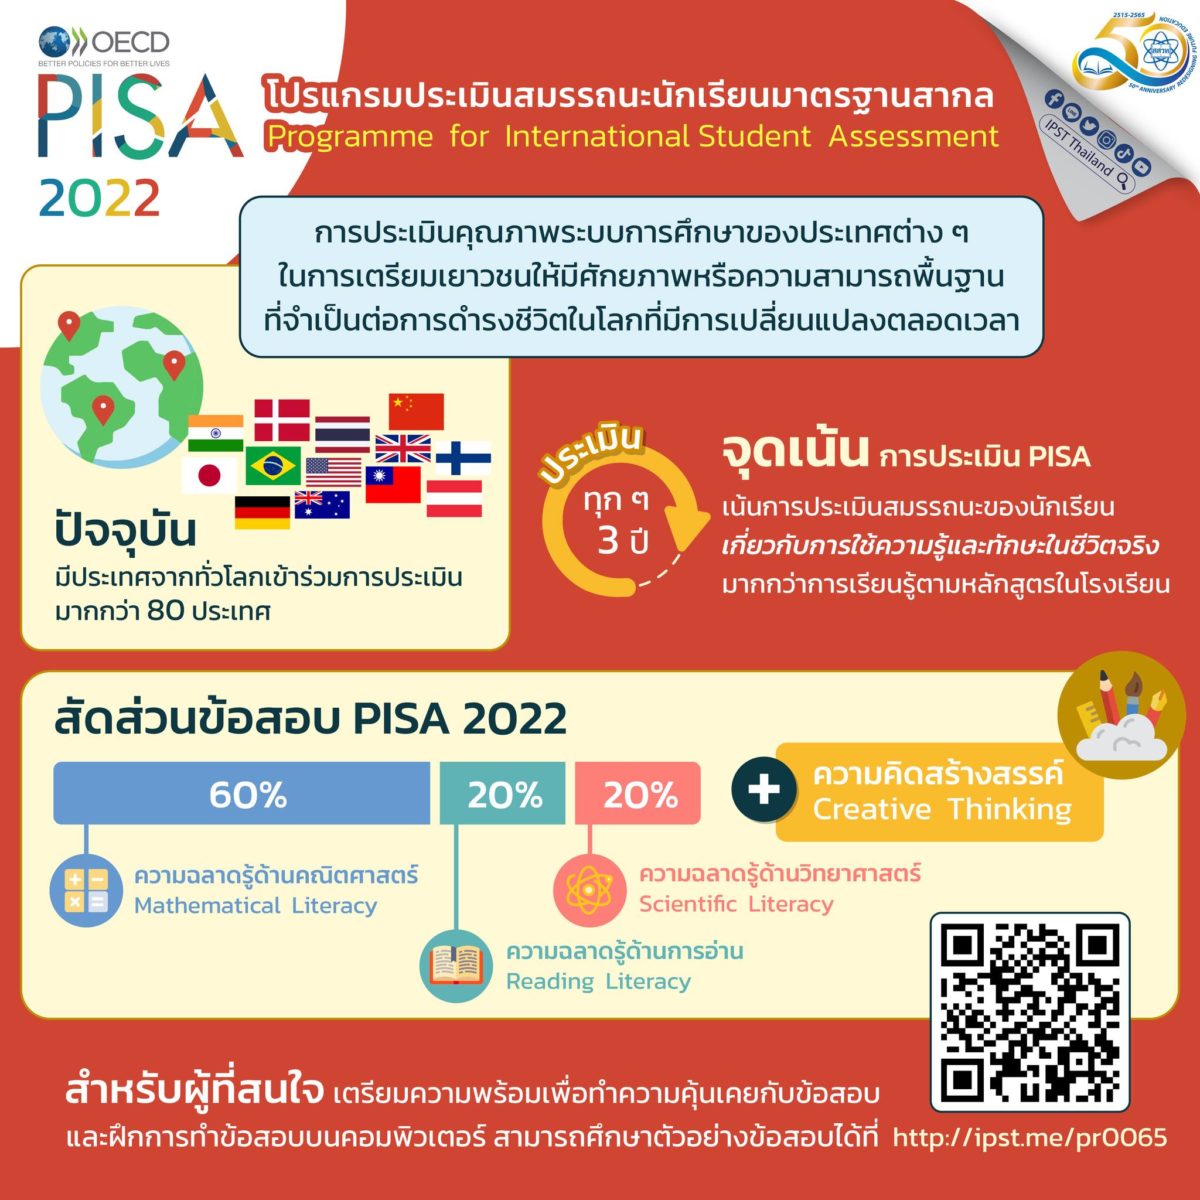 สสวท.เผยแพร่โปรแกรมทำข้อสอบ PISA ออนไลน์ เตรียมรับการประเมิน PISA 2022